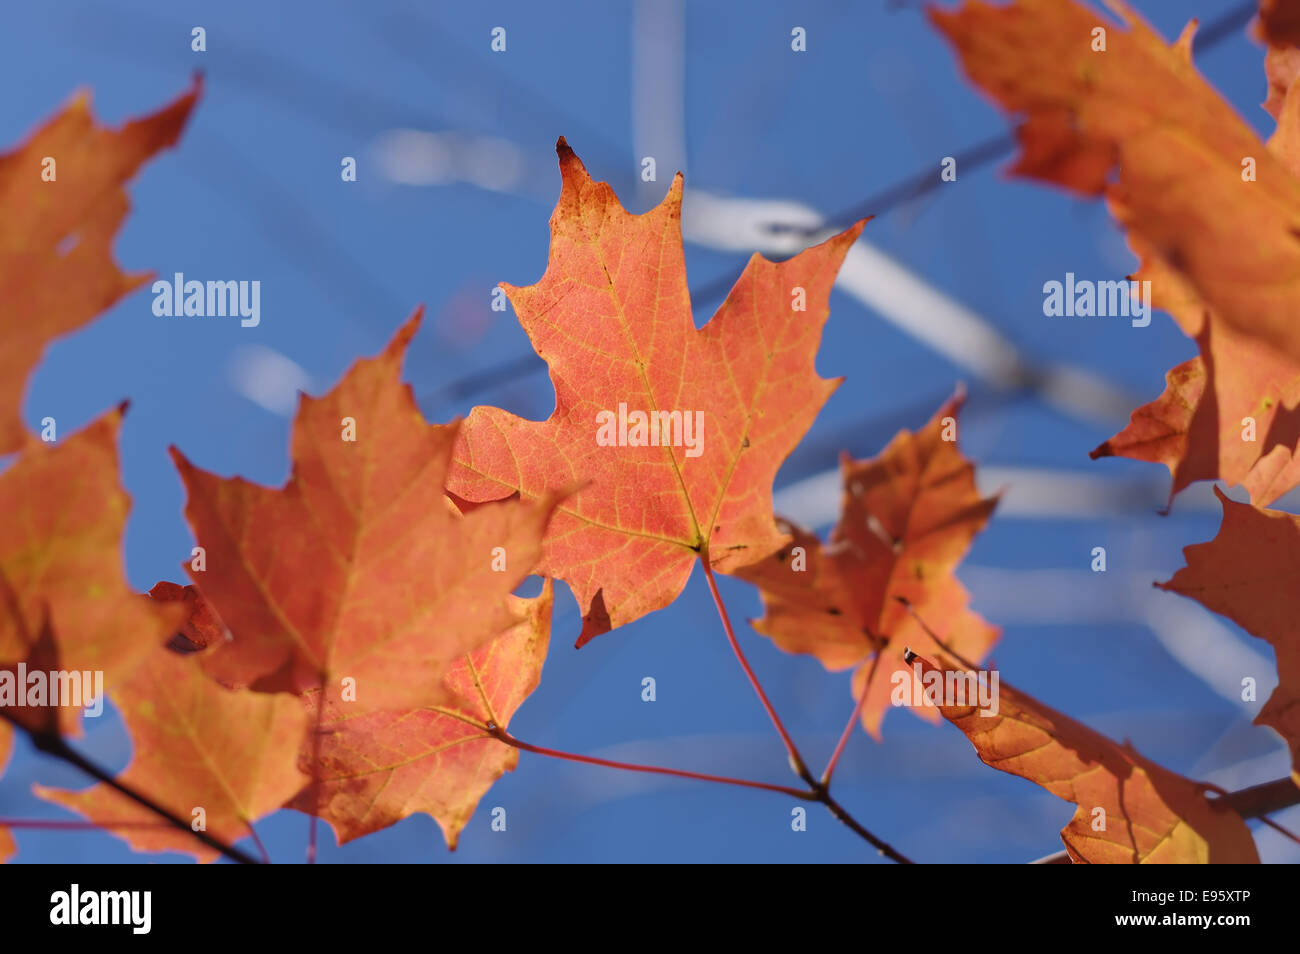 Autumn-leaves--maple-E95XTP.jpg